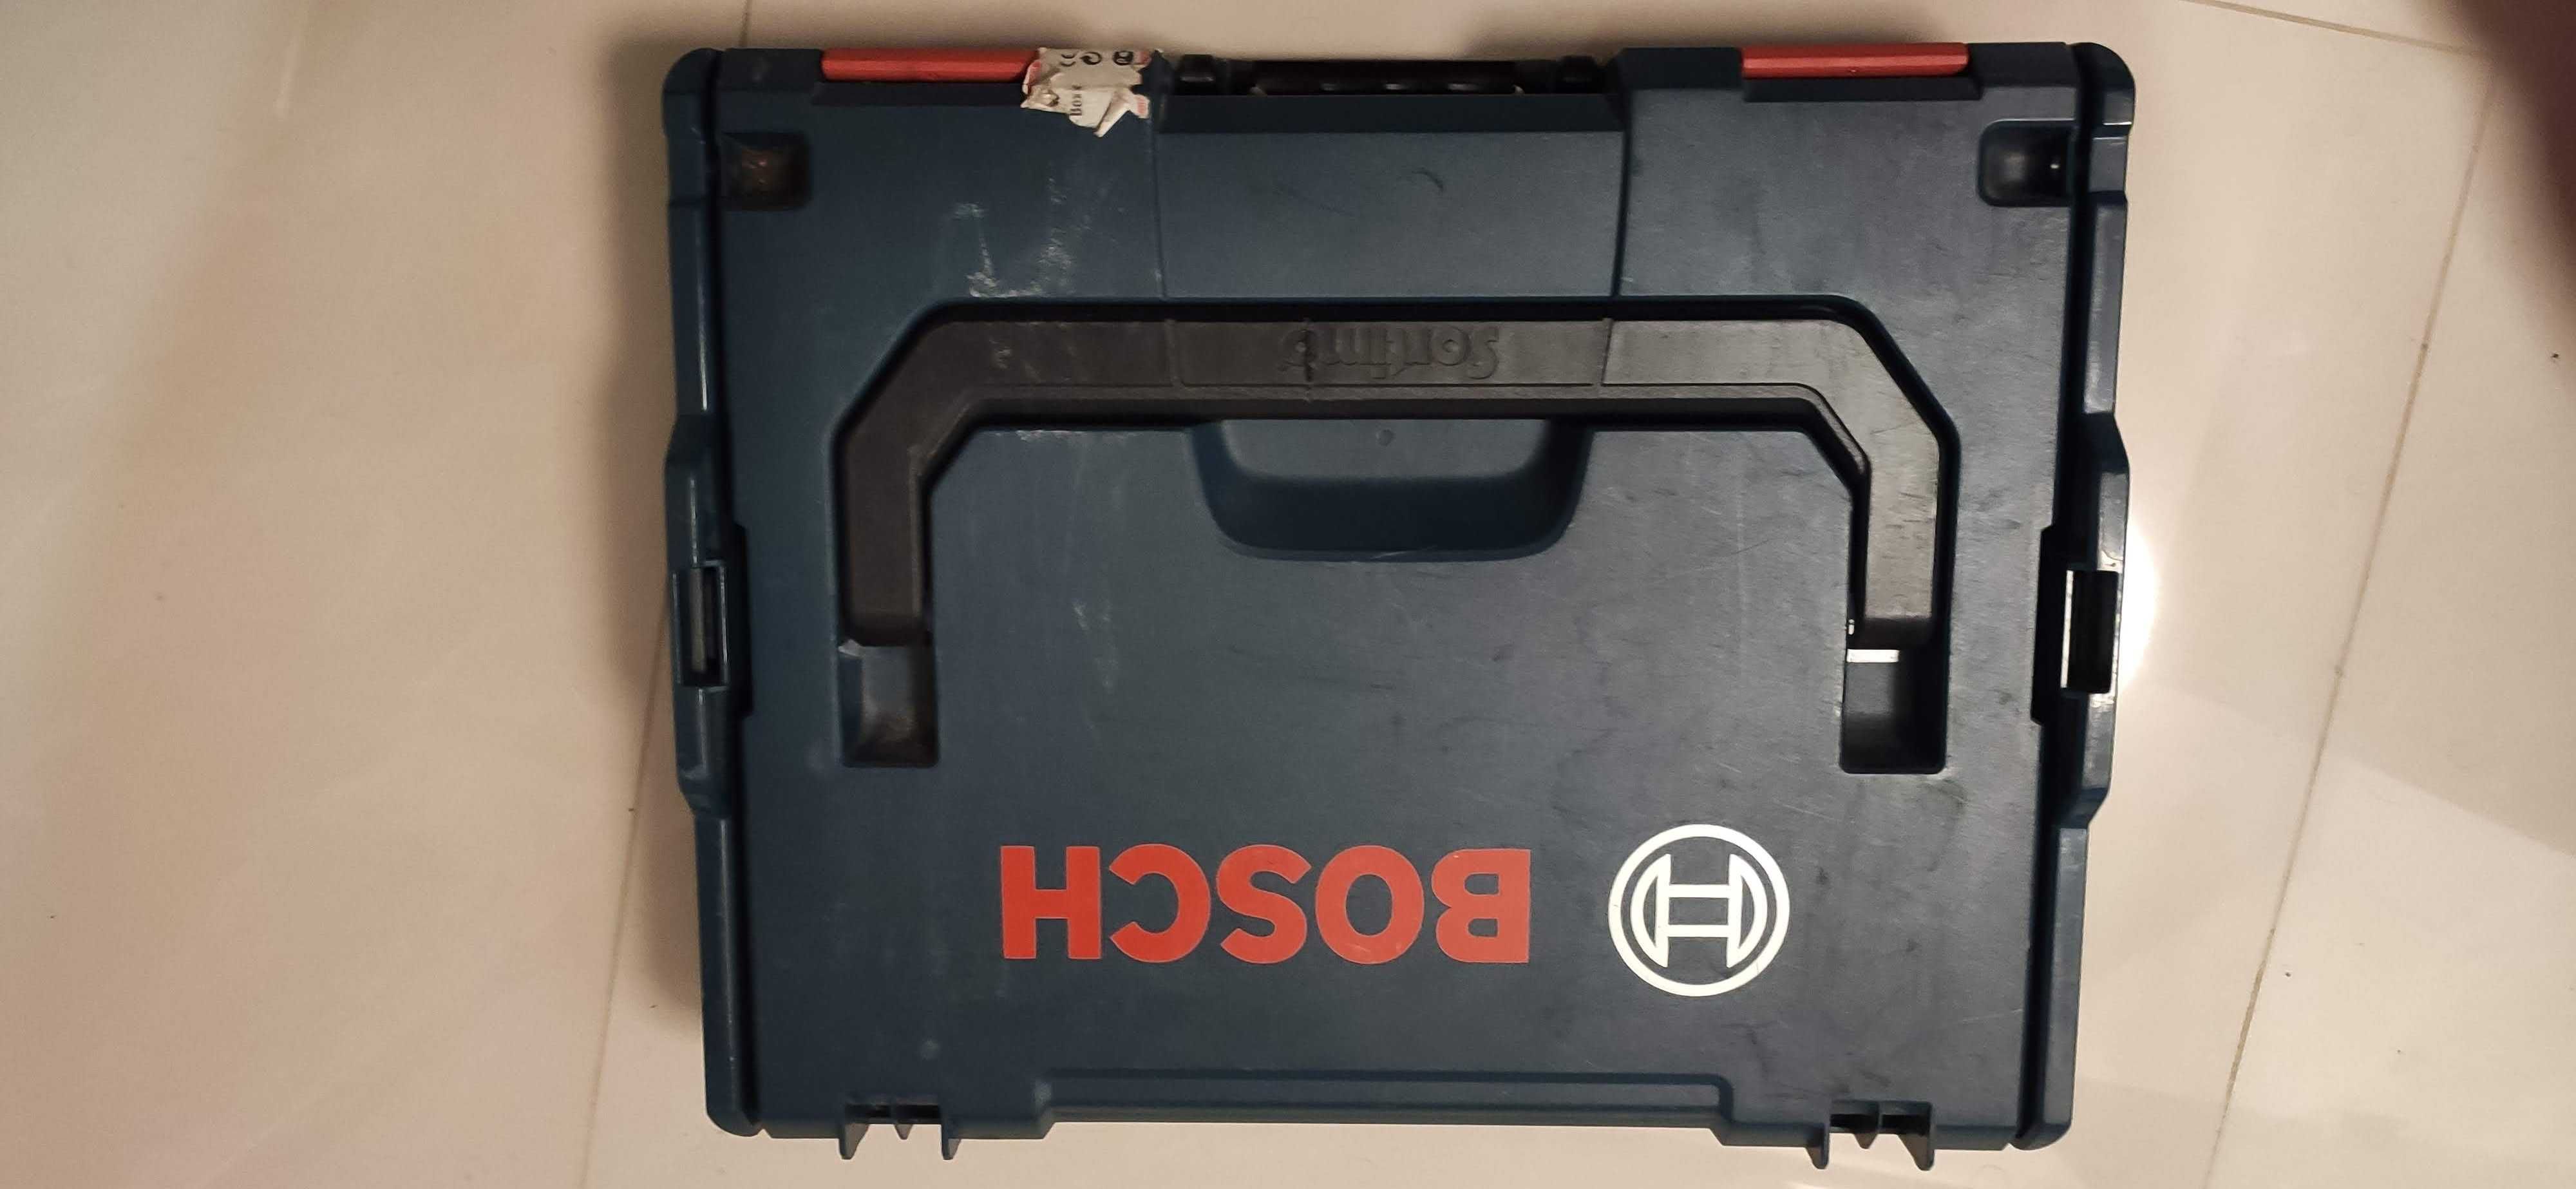 Narzędzie Wielofunkcyjne Bosch GOP 10,8V-LI Professional